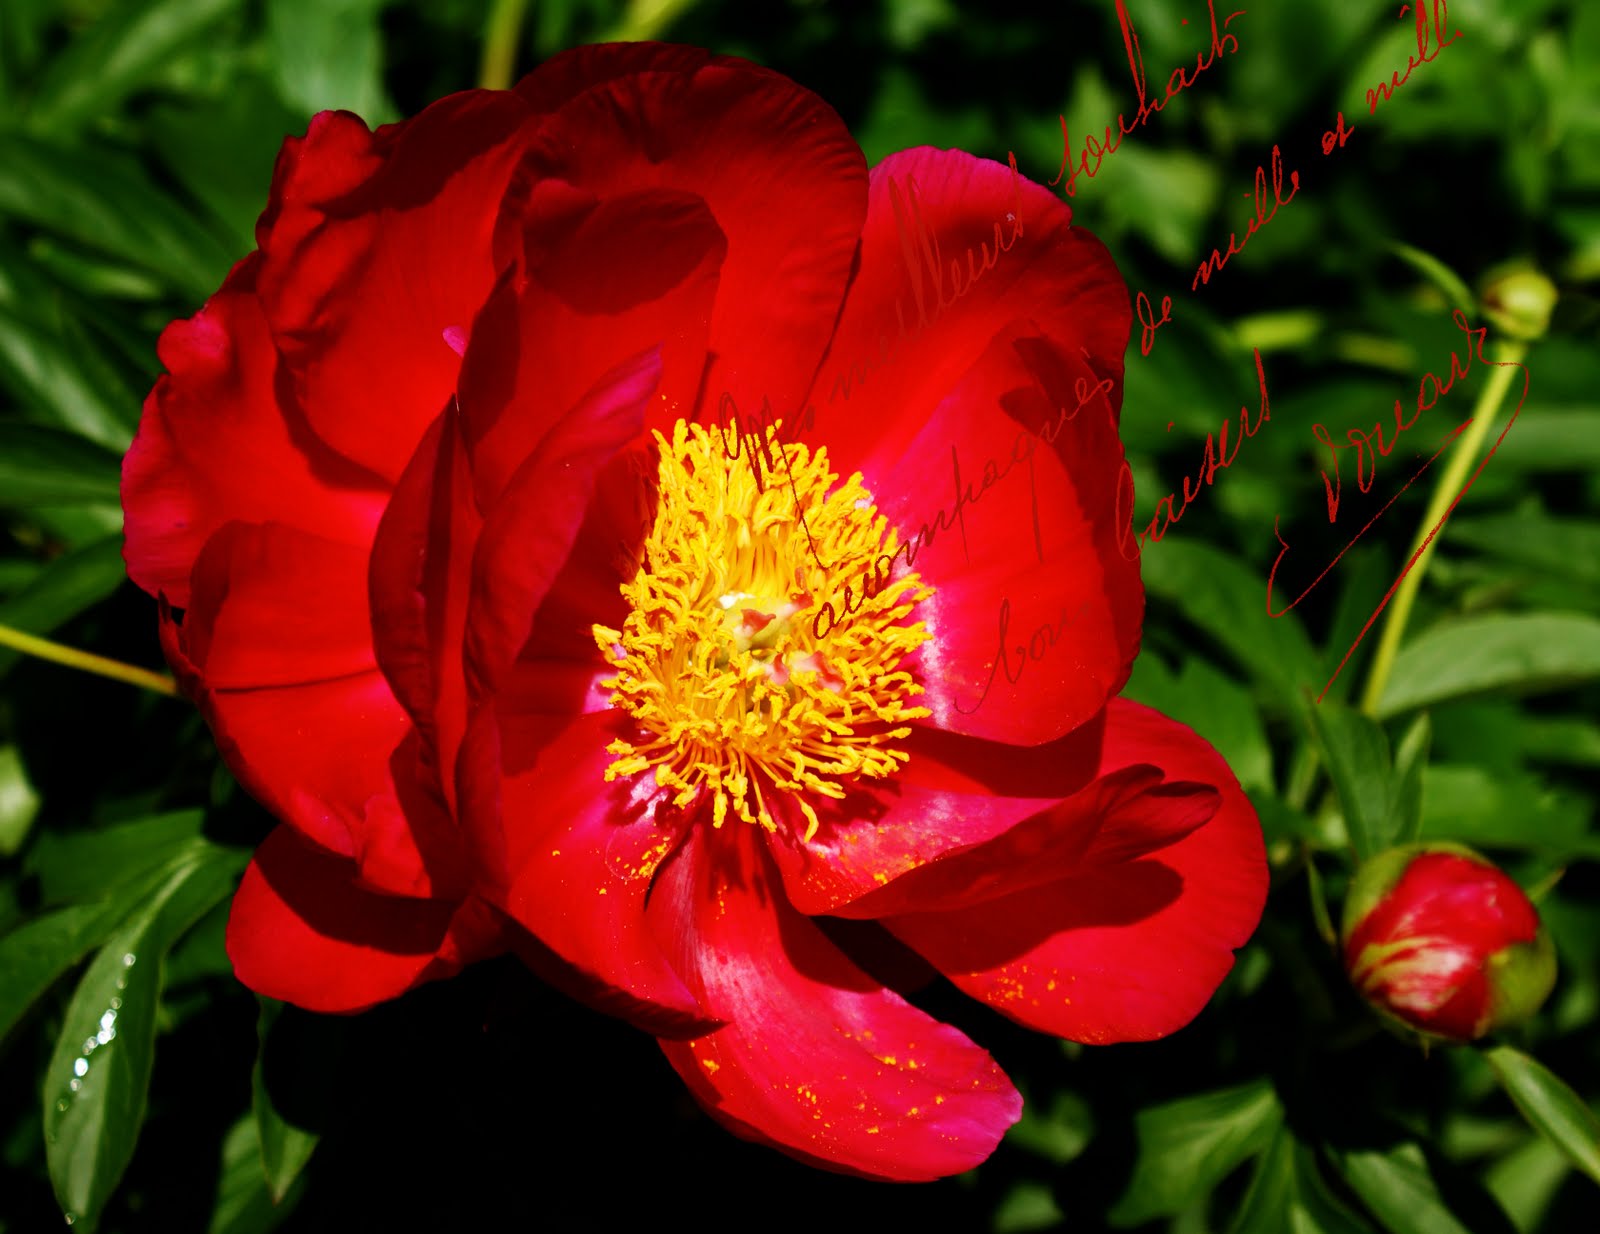 http://1.bp.blogspot.com/-5i3ZHI5c-wQ/TfPvwundGBI/AAAAAAAAJNk/LlyxuhGmtUM/s1600/French+red+rose.jpg